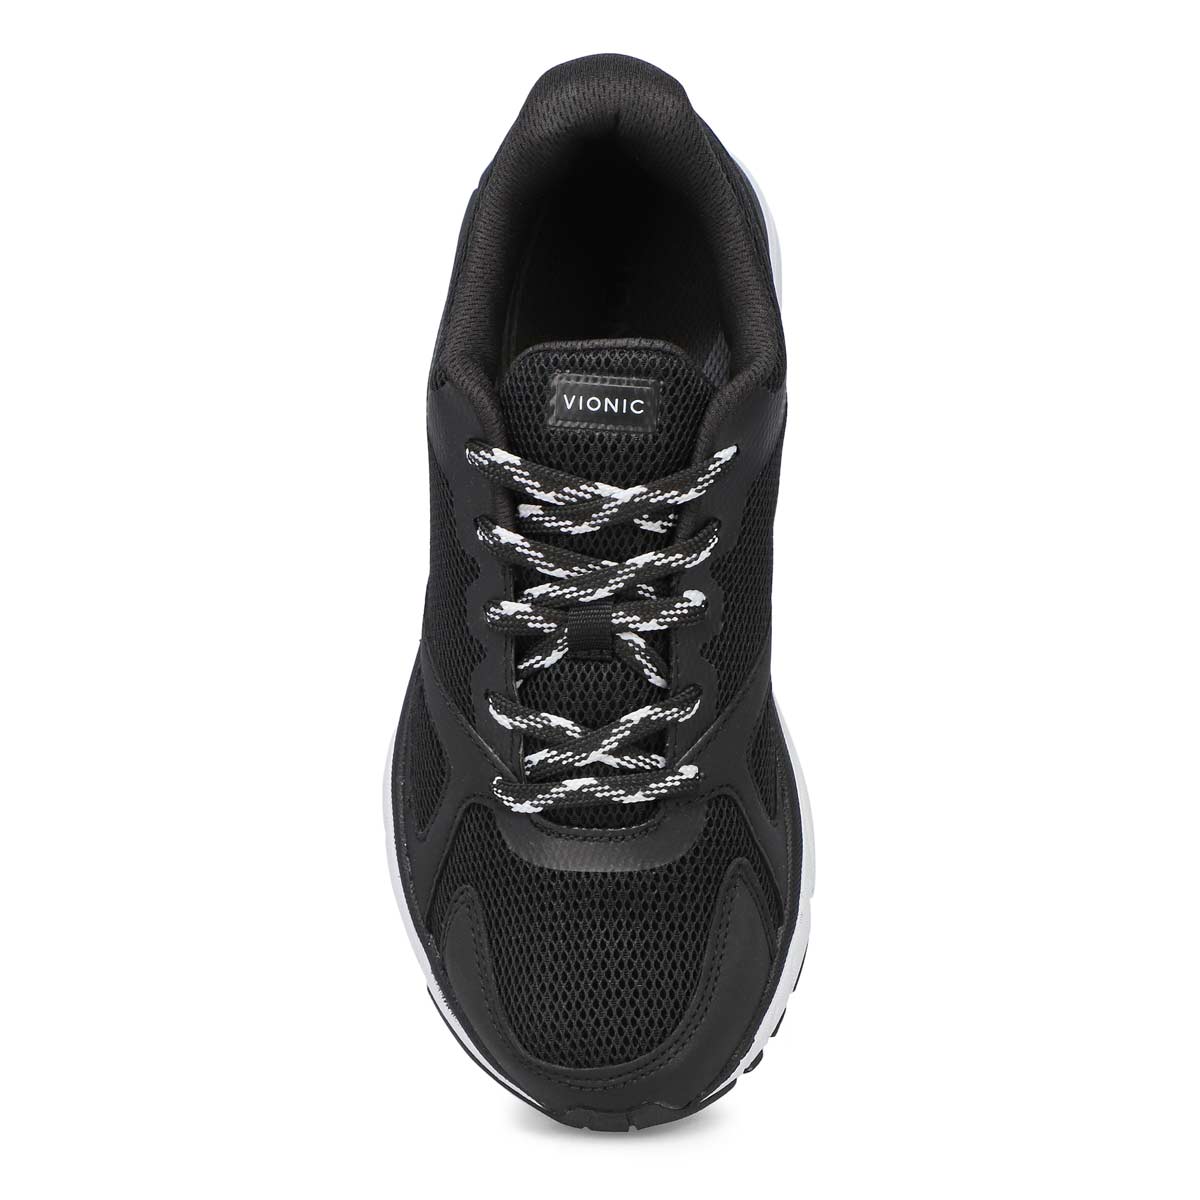 Vionic Women's Tokyo Running Shoes - Black/Bl | SoftMoc.com